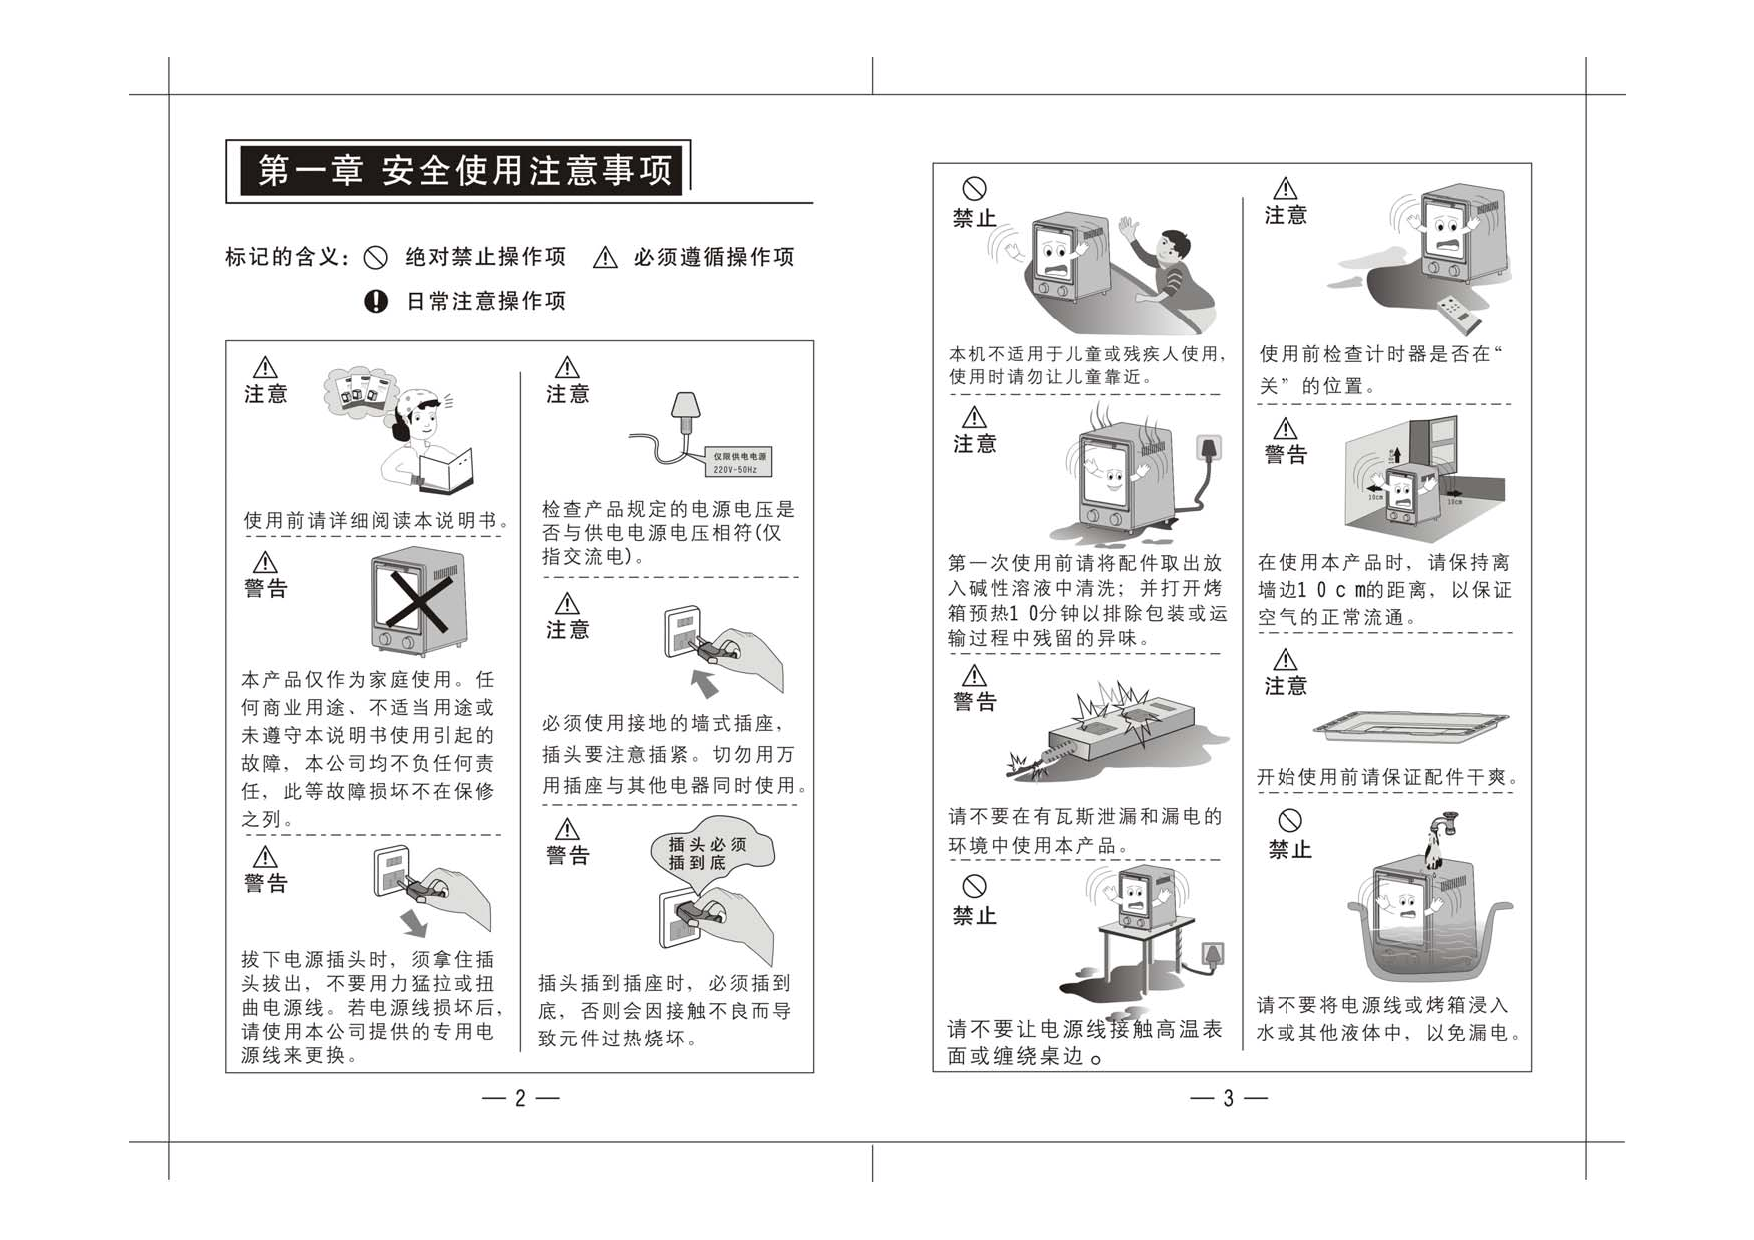 九阳 Joyyoung KX-10J03 使用说明书 第2页